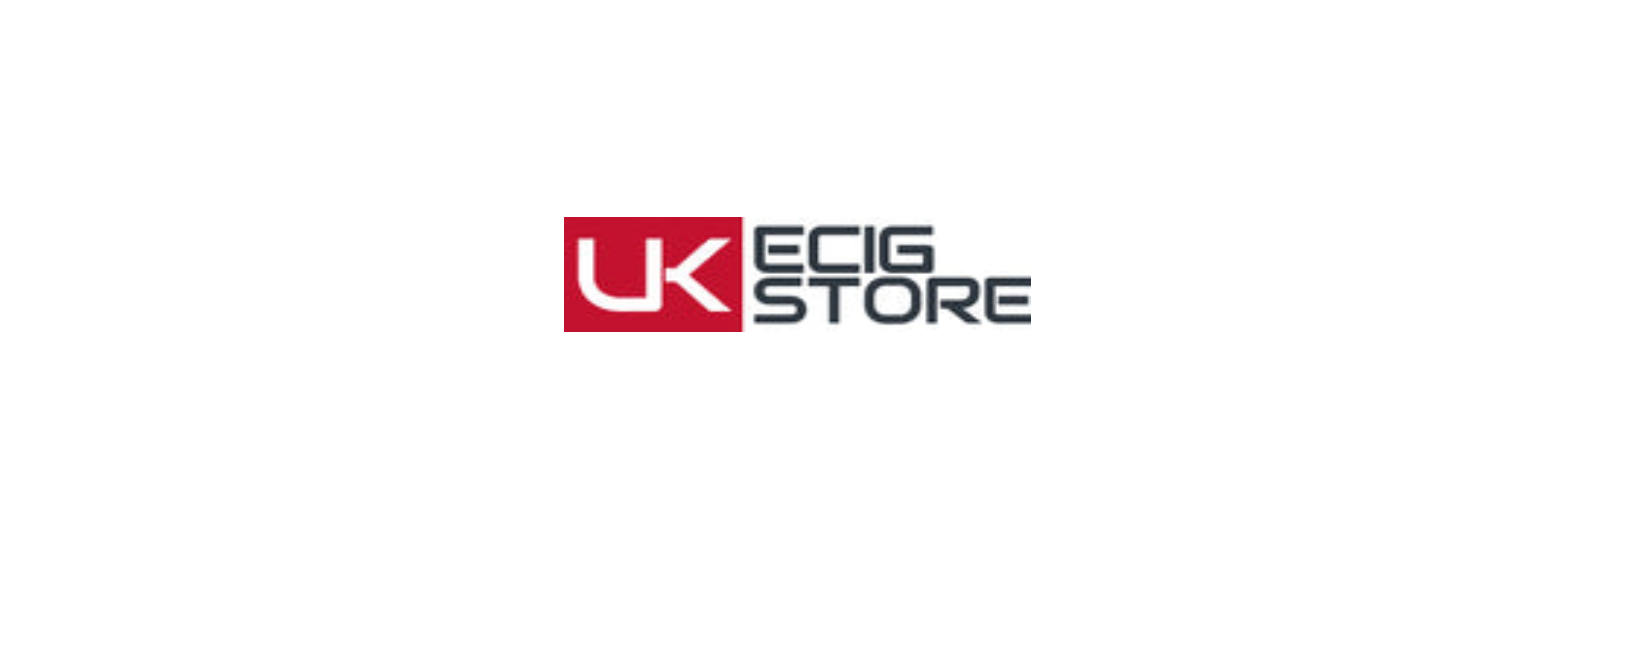 eCig Store Discount Code 2022